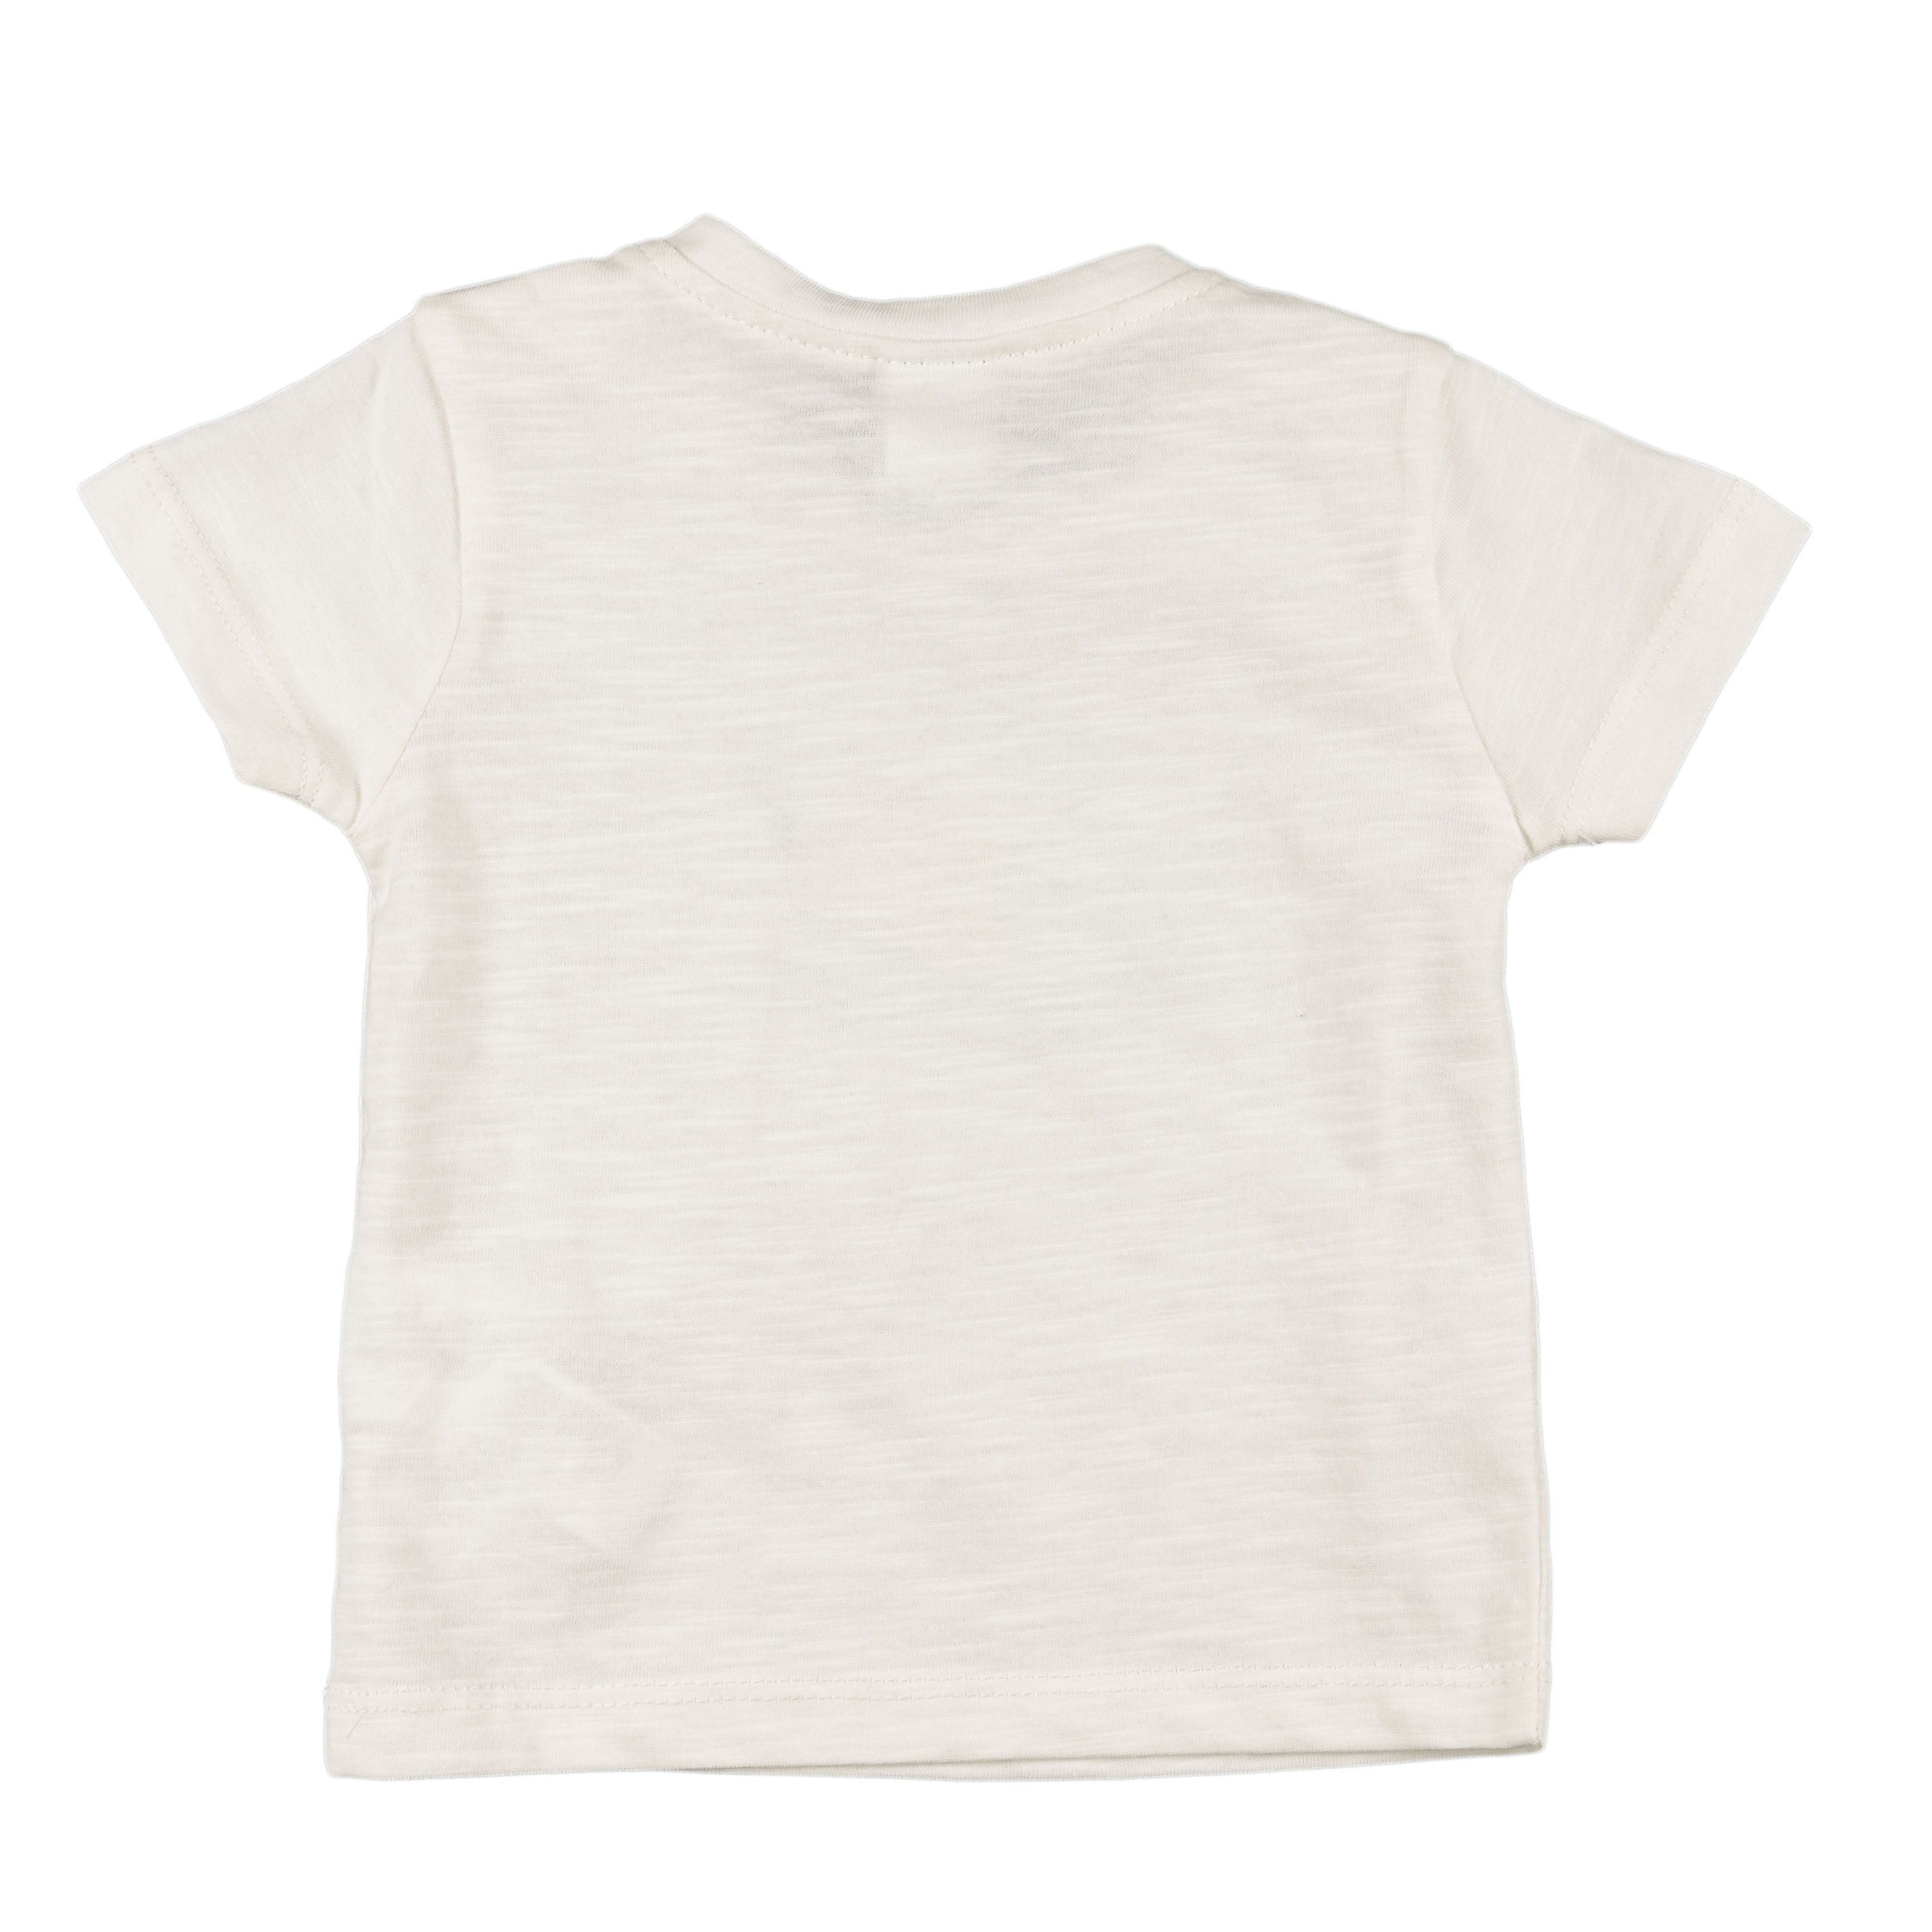 Camiseta de recién nacido en color crudo VERANO/Outlet